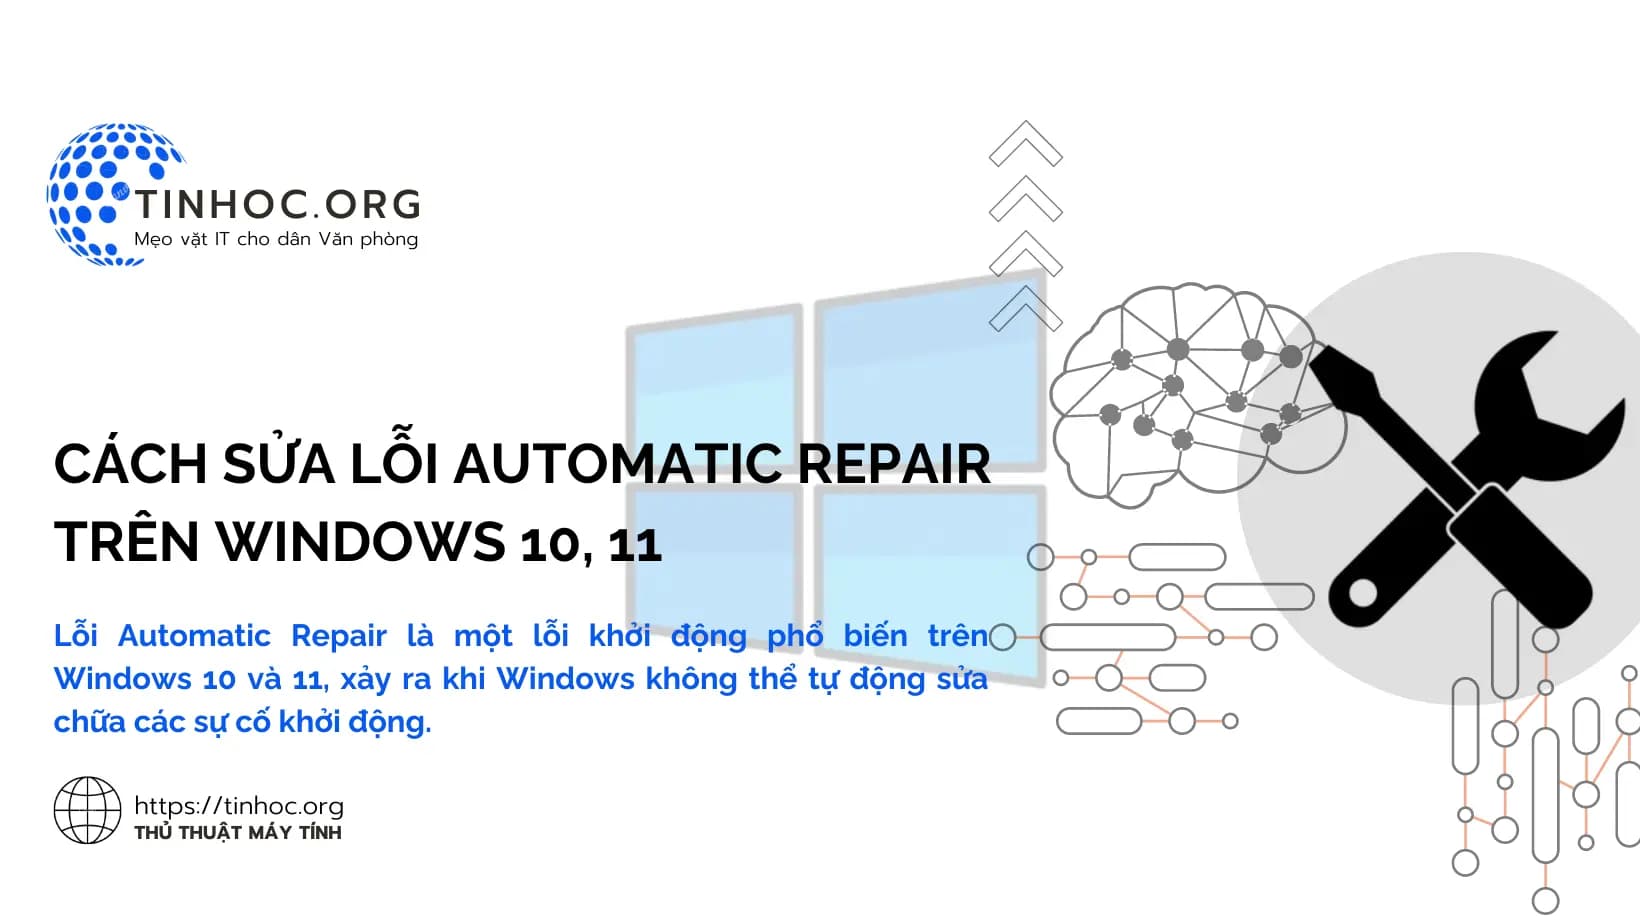 Lỗi Automatic Repair là một lỗi khởi động phổ biến trên Windows 10 và 11, xảy ra khi Windows không thể tự động sửa chữa các sự cố khởi động.